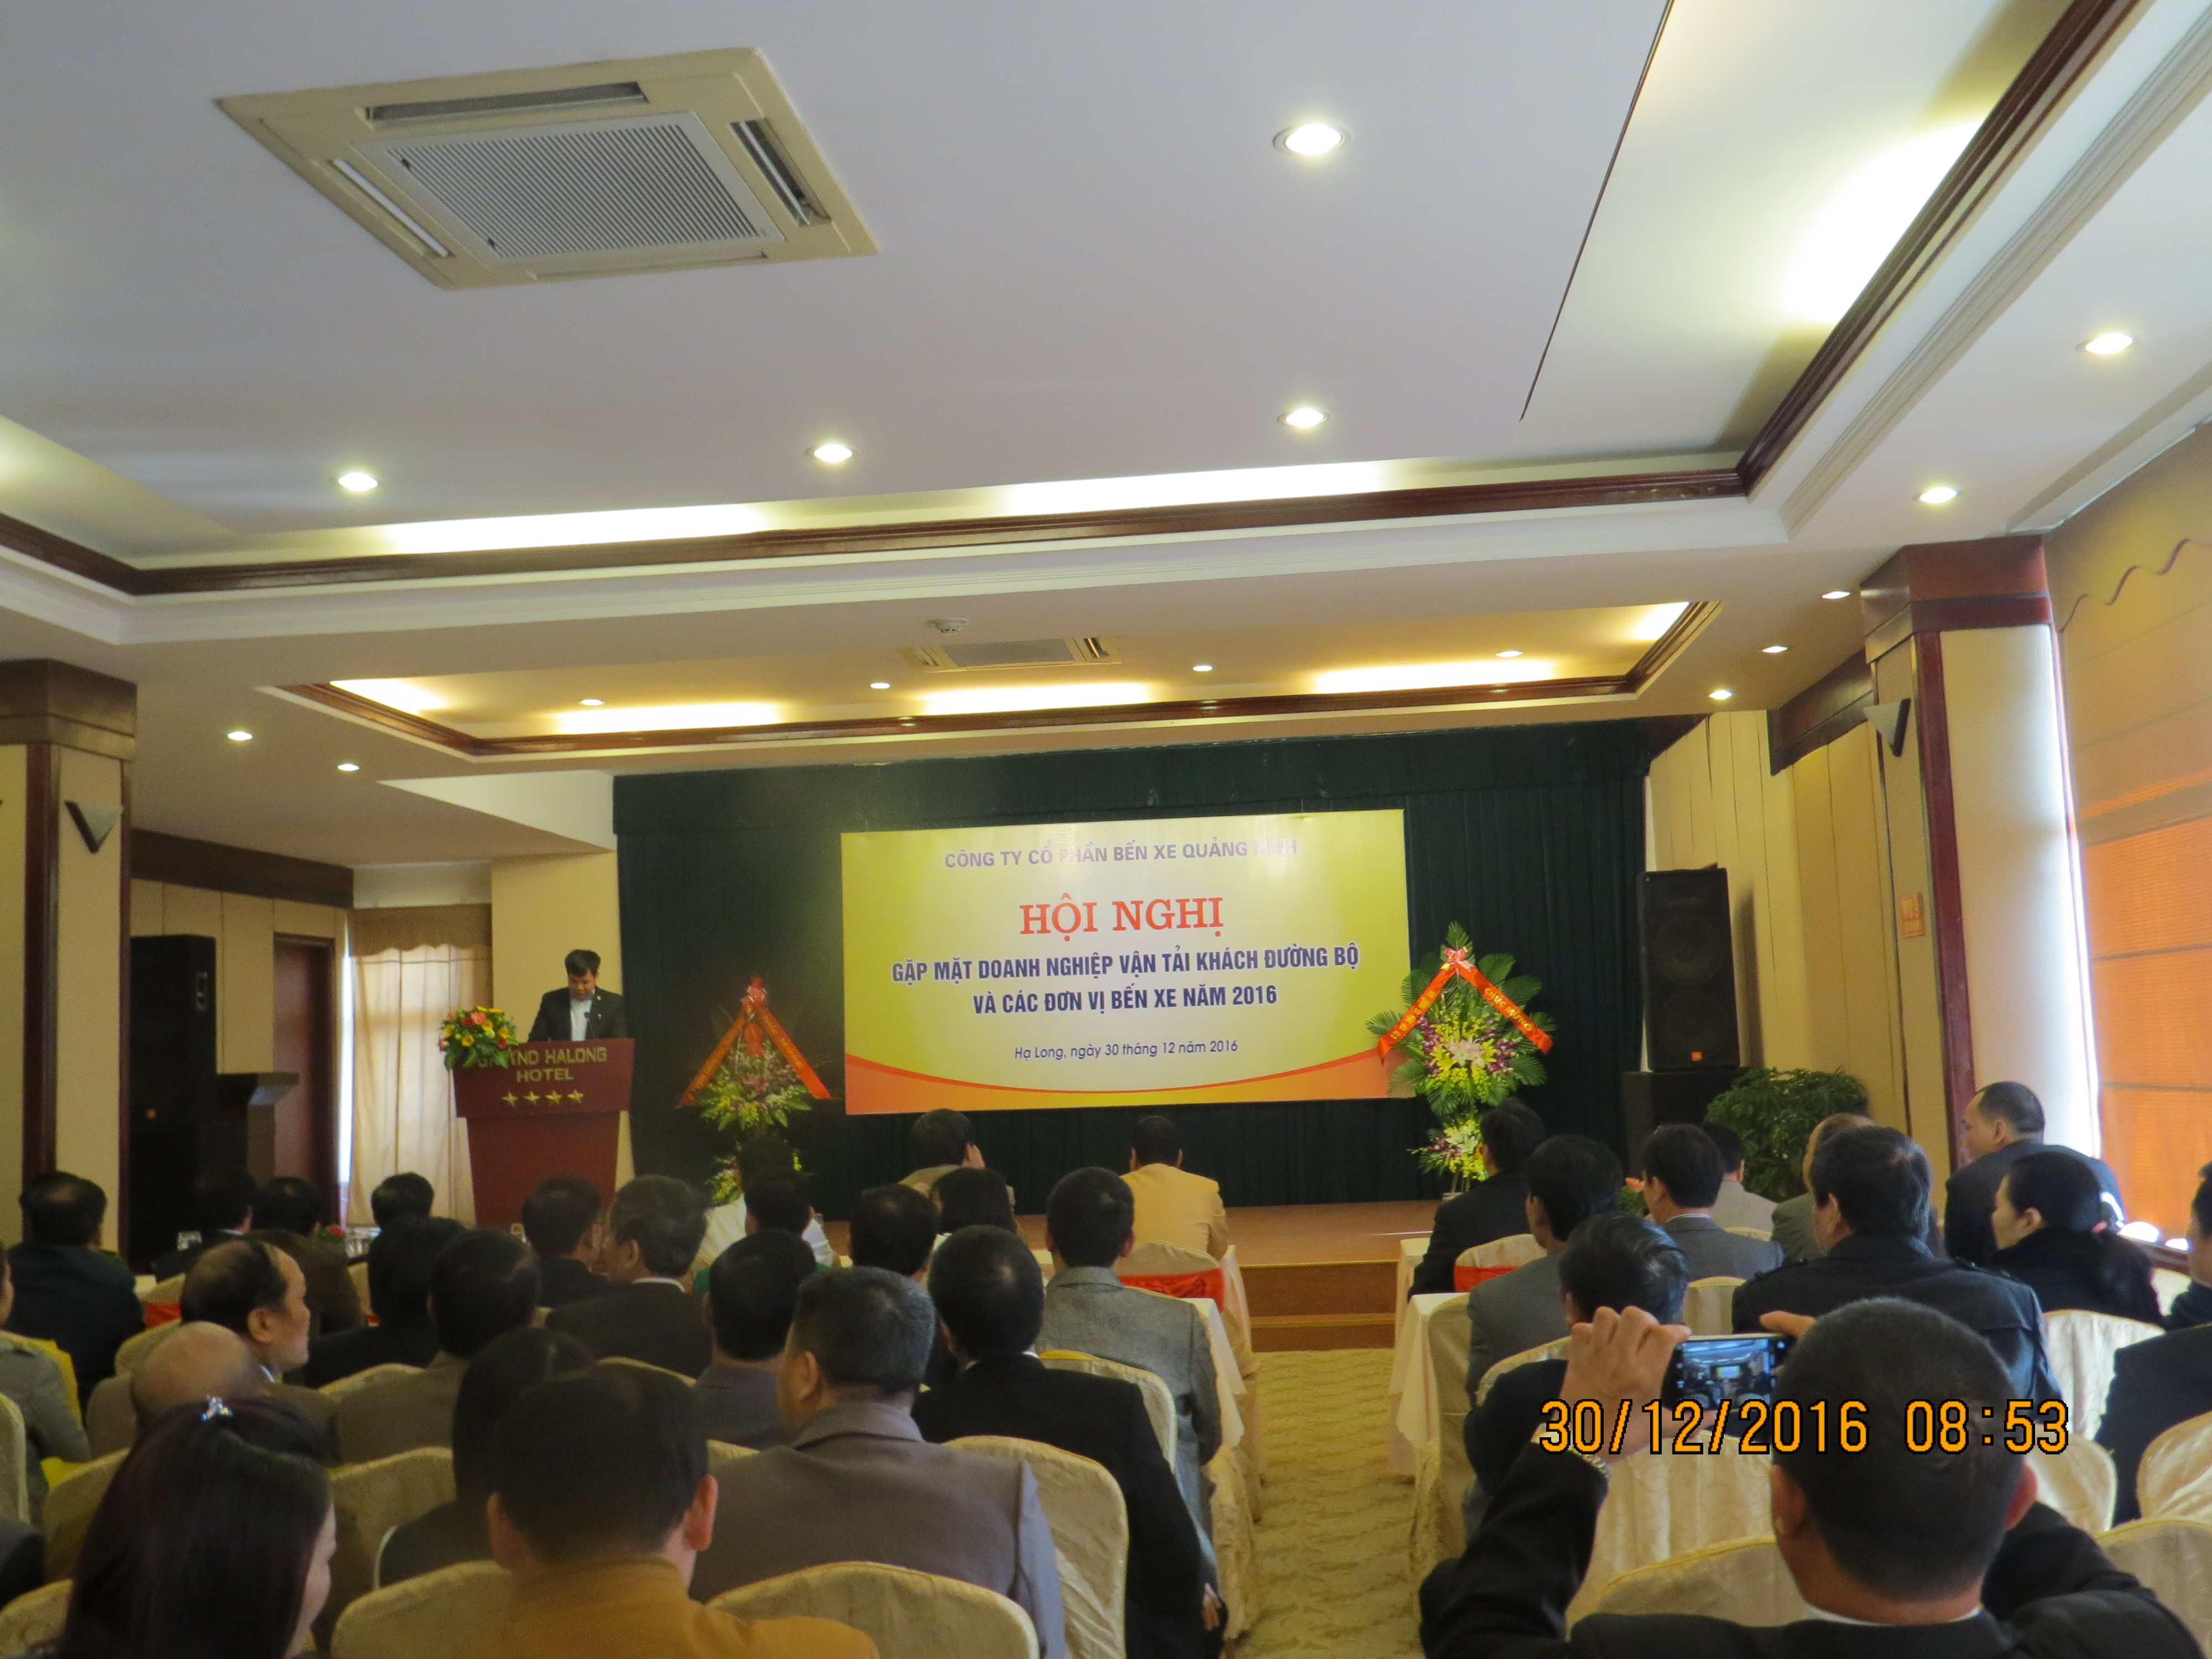 Ngày 30/12/2016, Công ty cổ phần Bến xe Quảng Ninh đã tổ chứcToàn cảnh Hội nghị gặp mặt doanh nghiệp vận tải đường bộ và các đơn vị bến xe năm 2016 tại khách sạn Công Đoàn Quảng Ninh